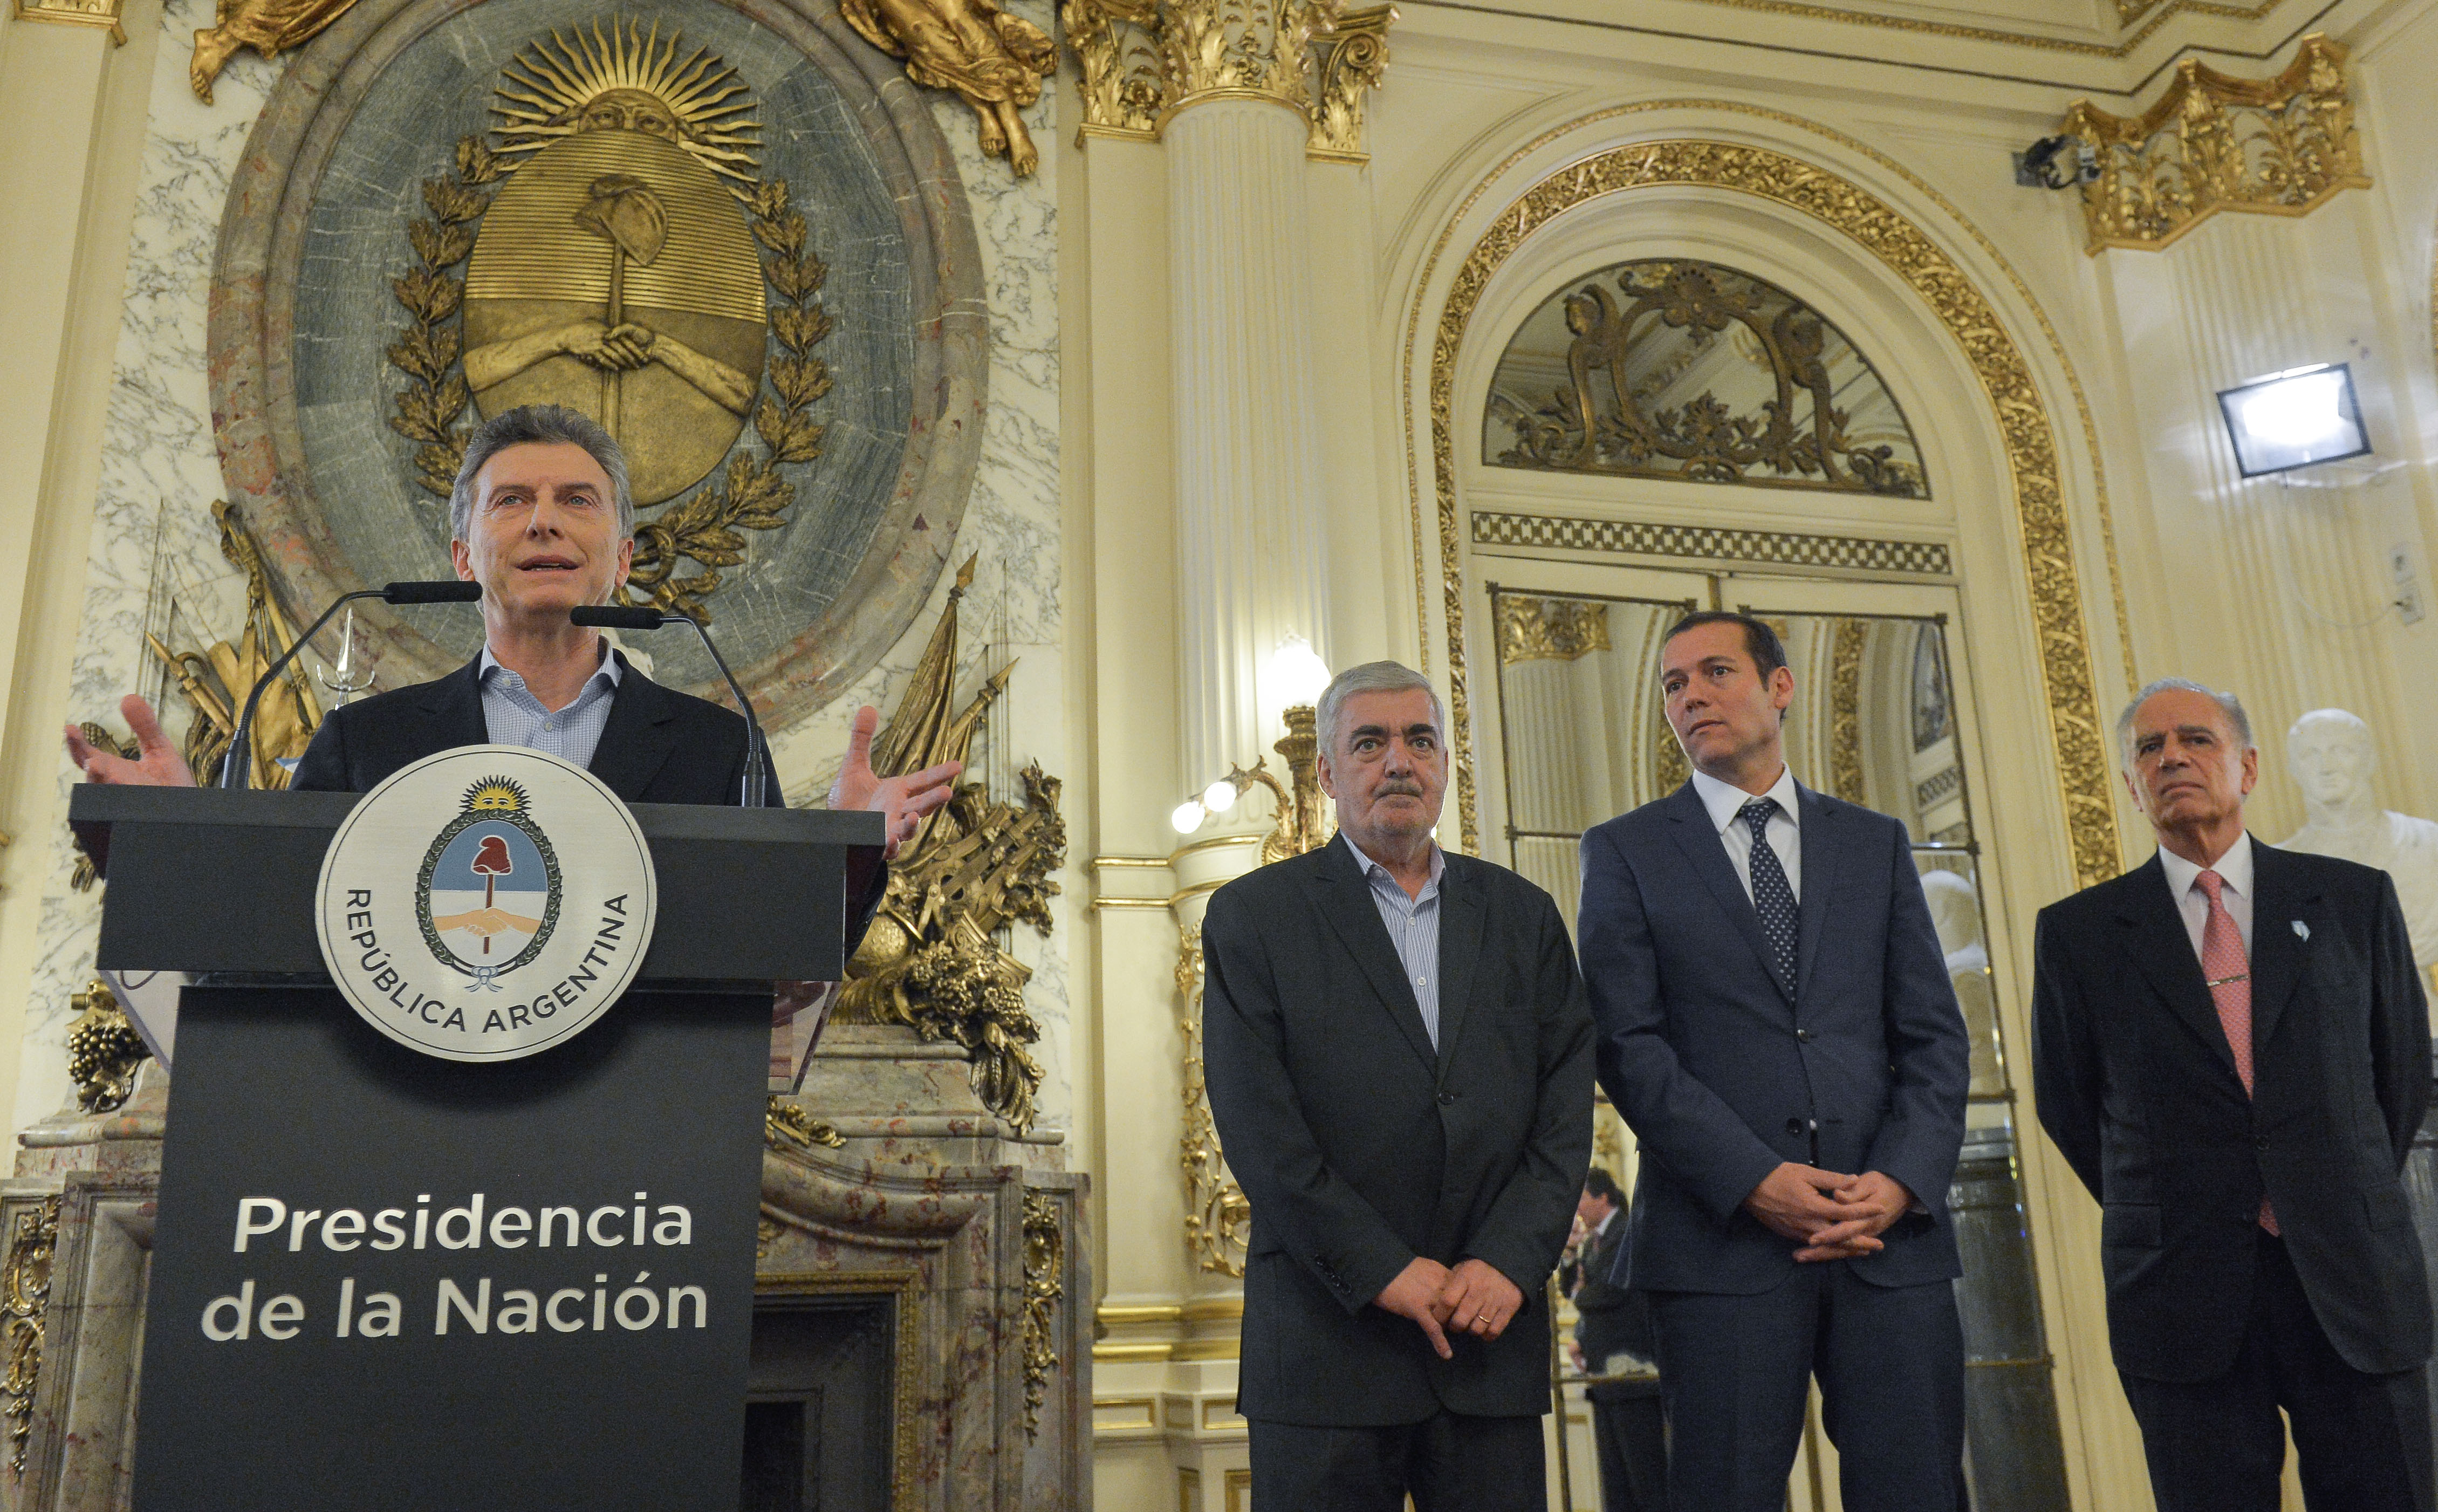 El presidente Macri anunció que la empresa Pan American Energy invertirá en el país US$ 1400 millones